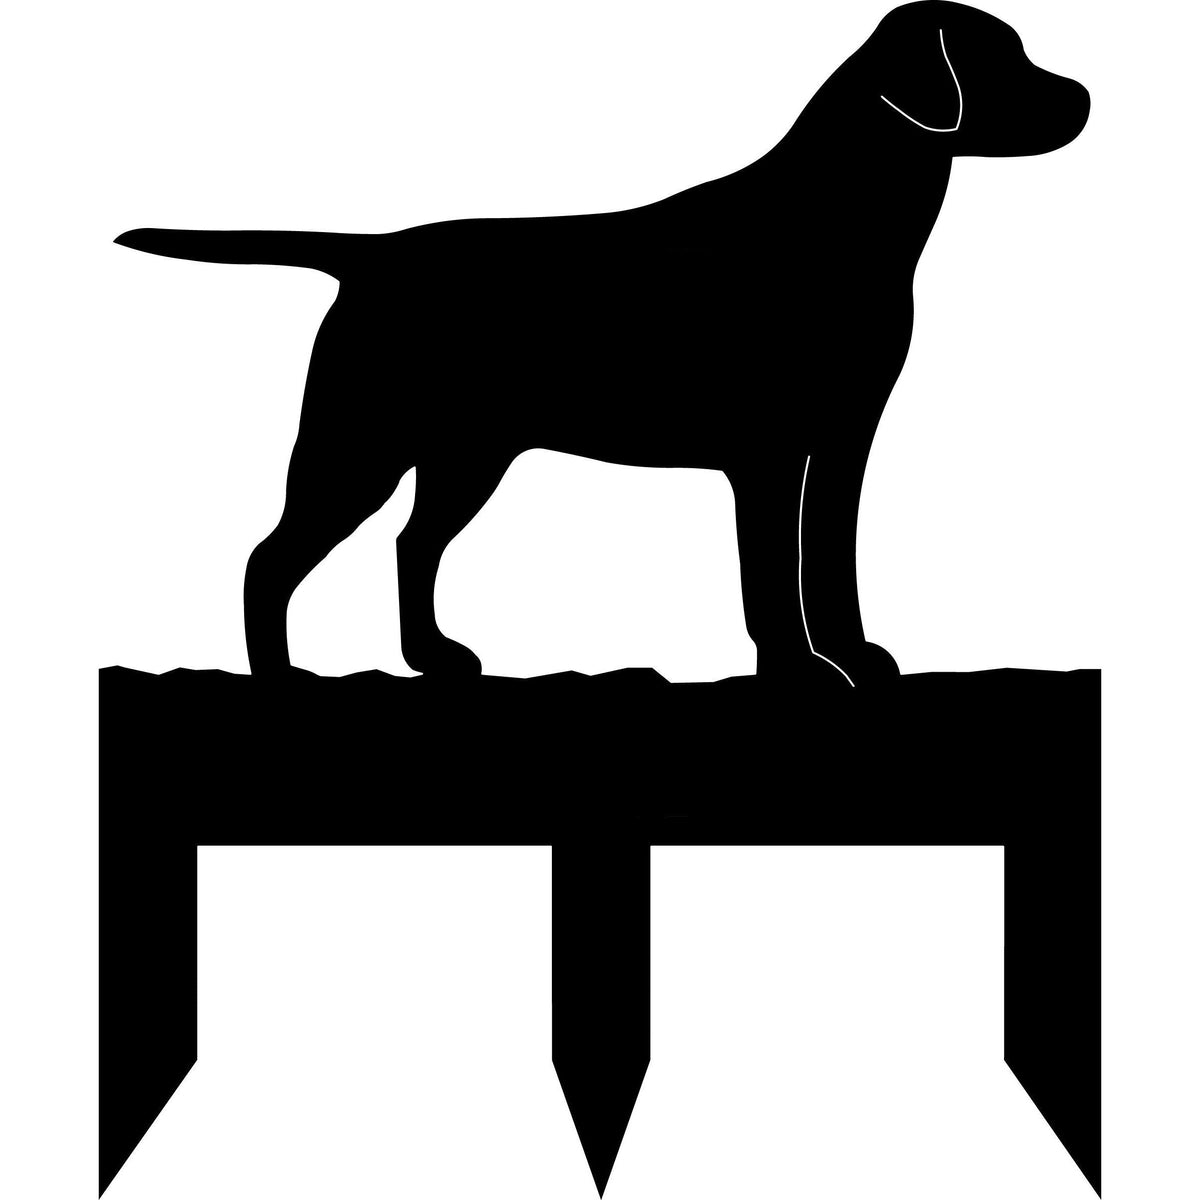 Labrador Retriever dog address stake